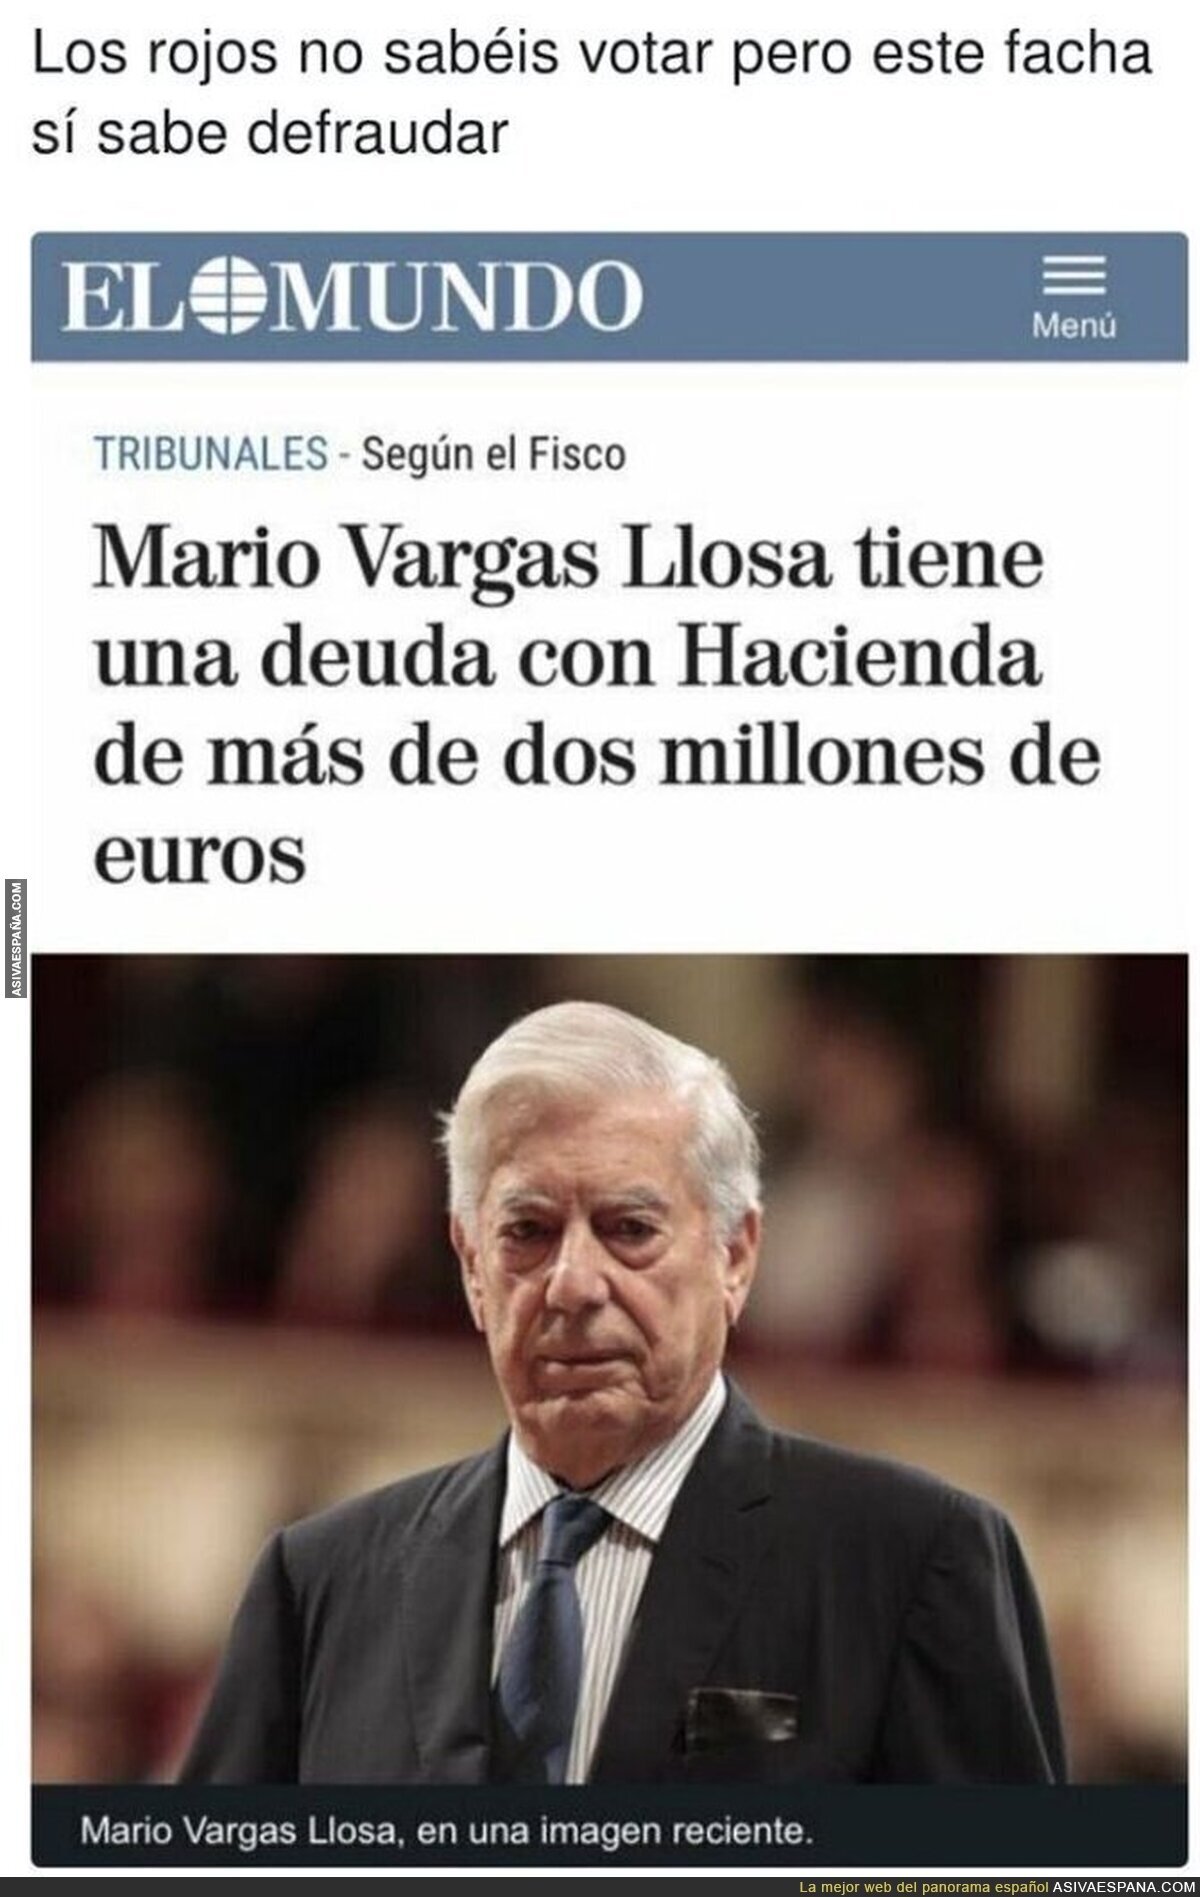 Vargas Llosa y sus grandes valores